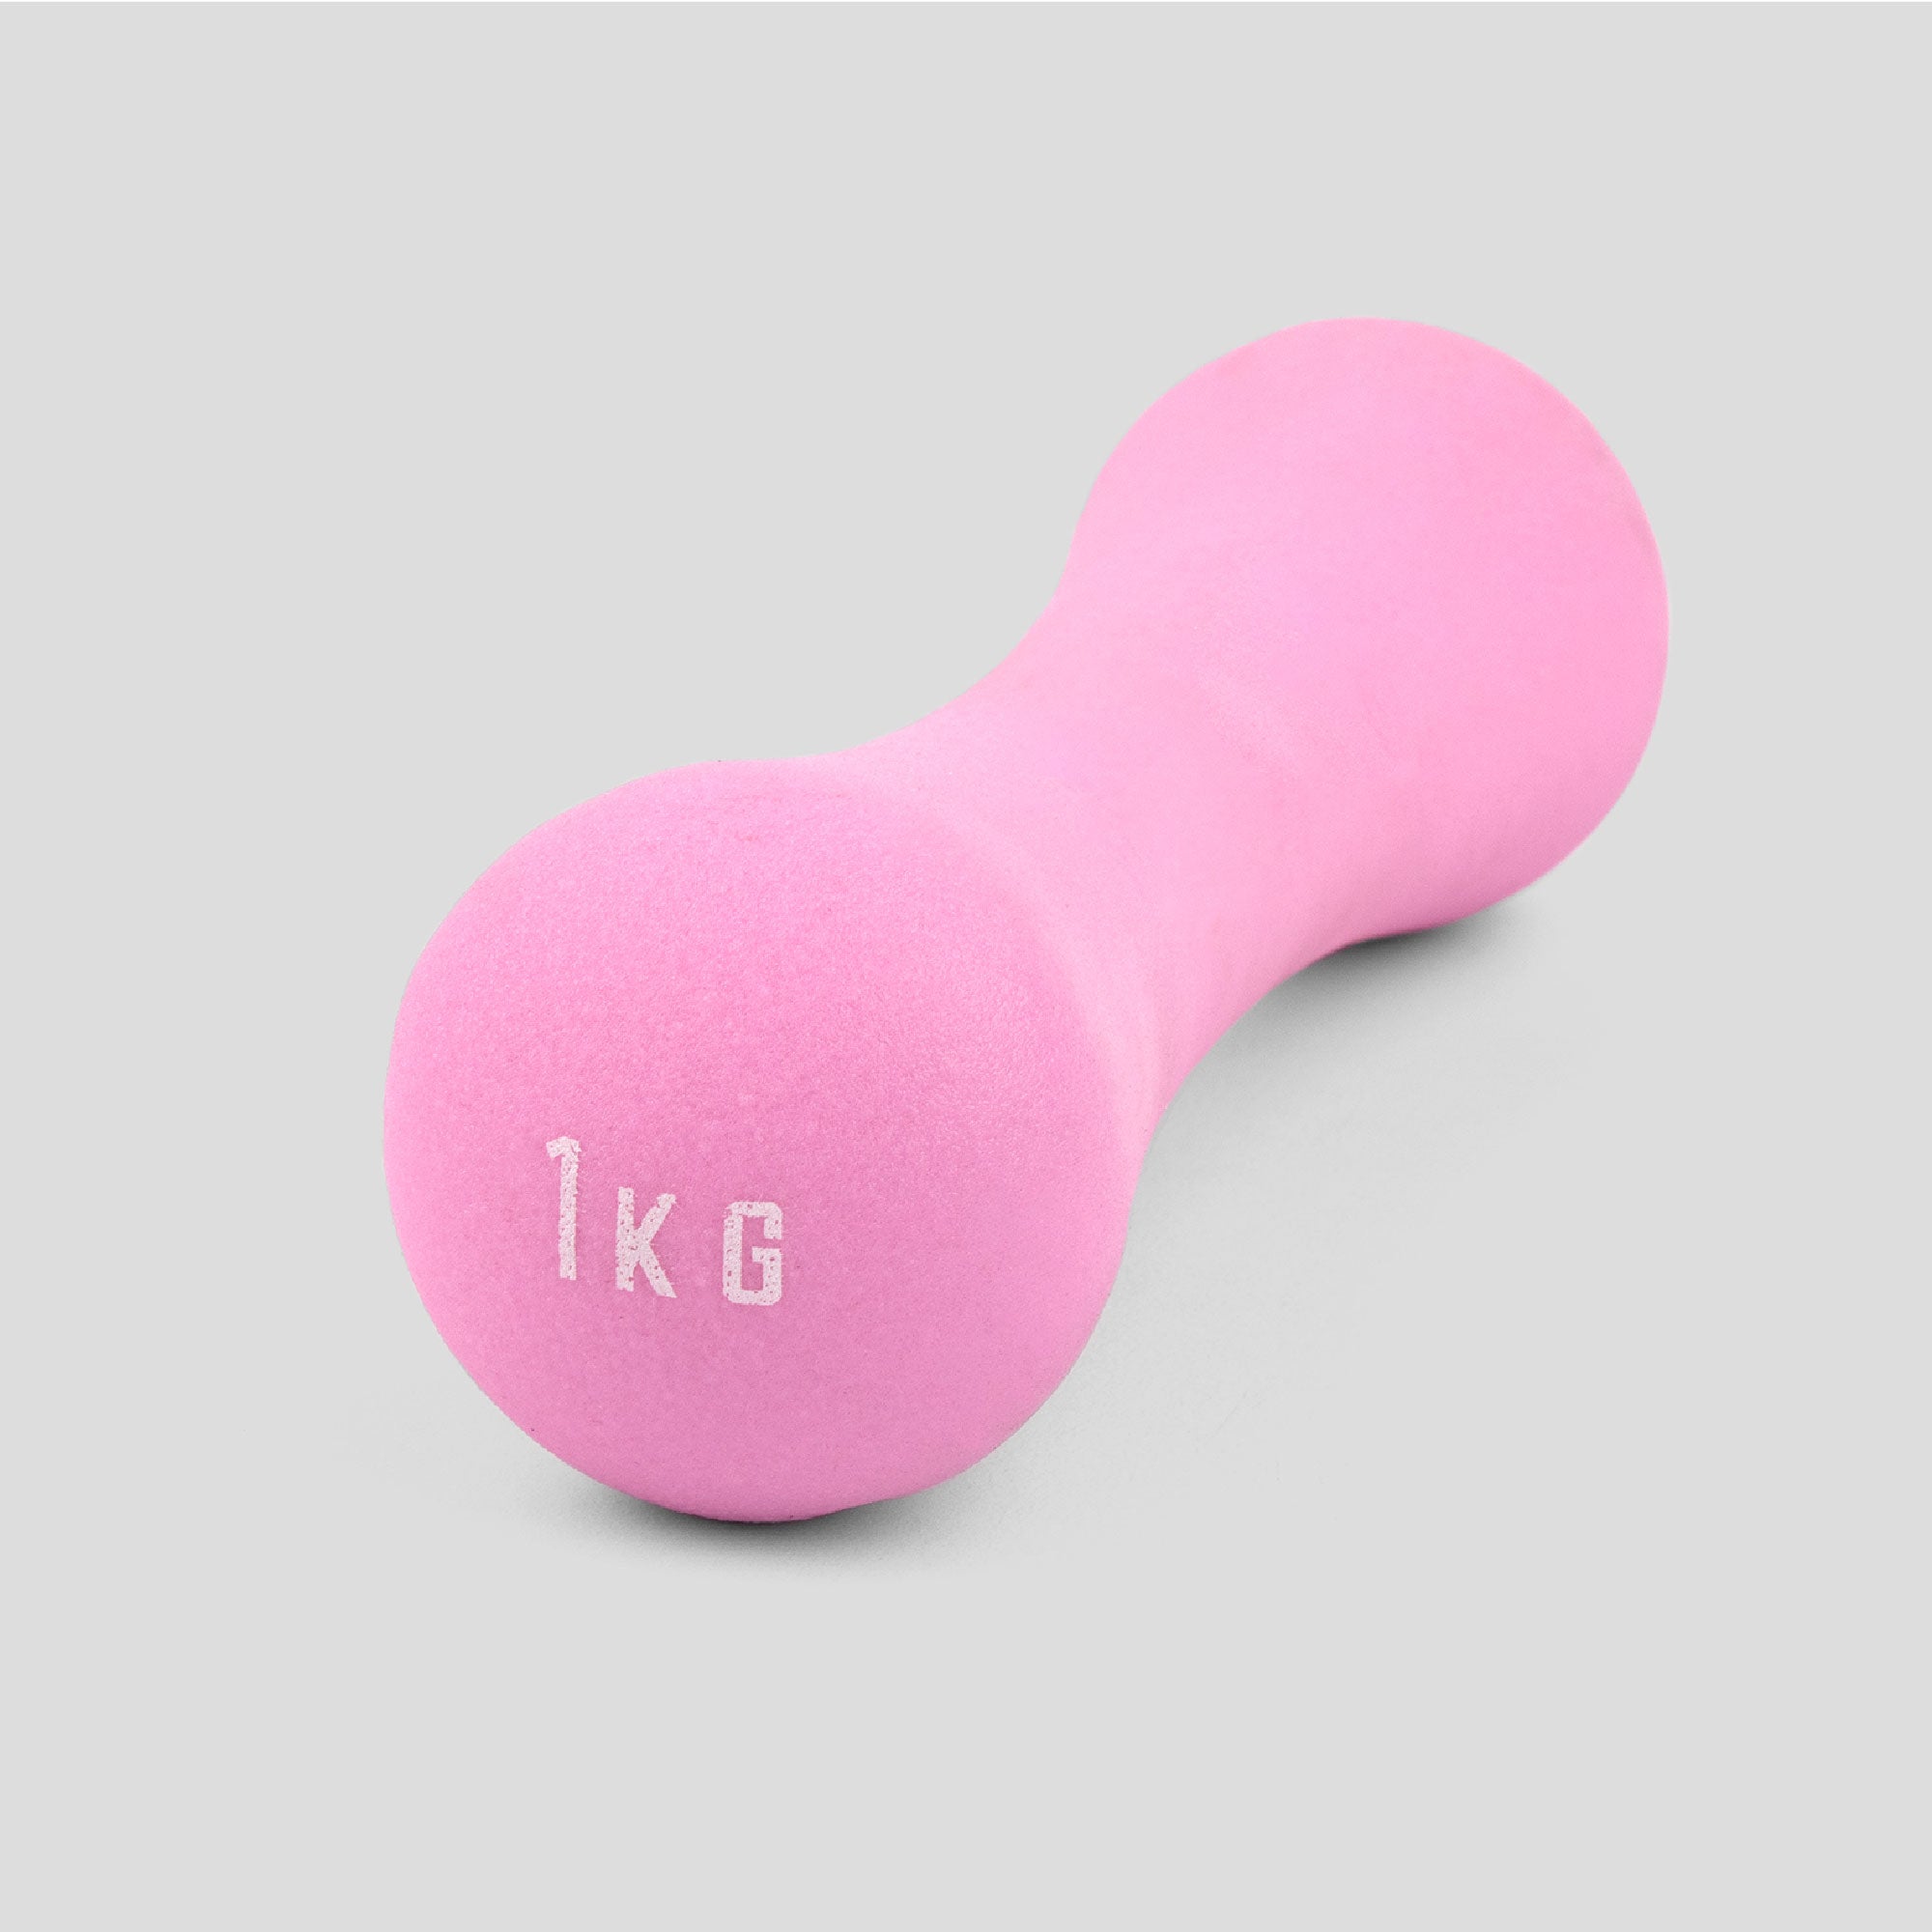 1kg Pink Neoprene Dumbbell - Single